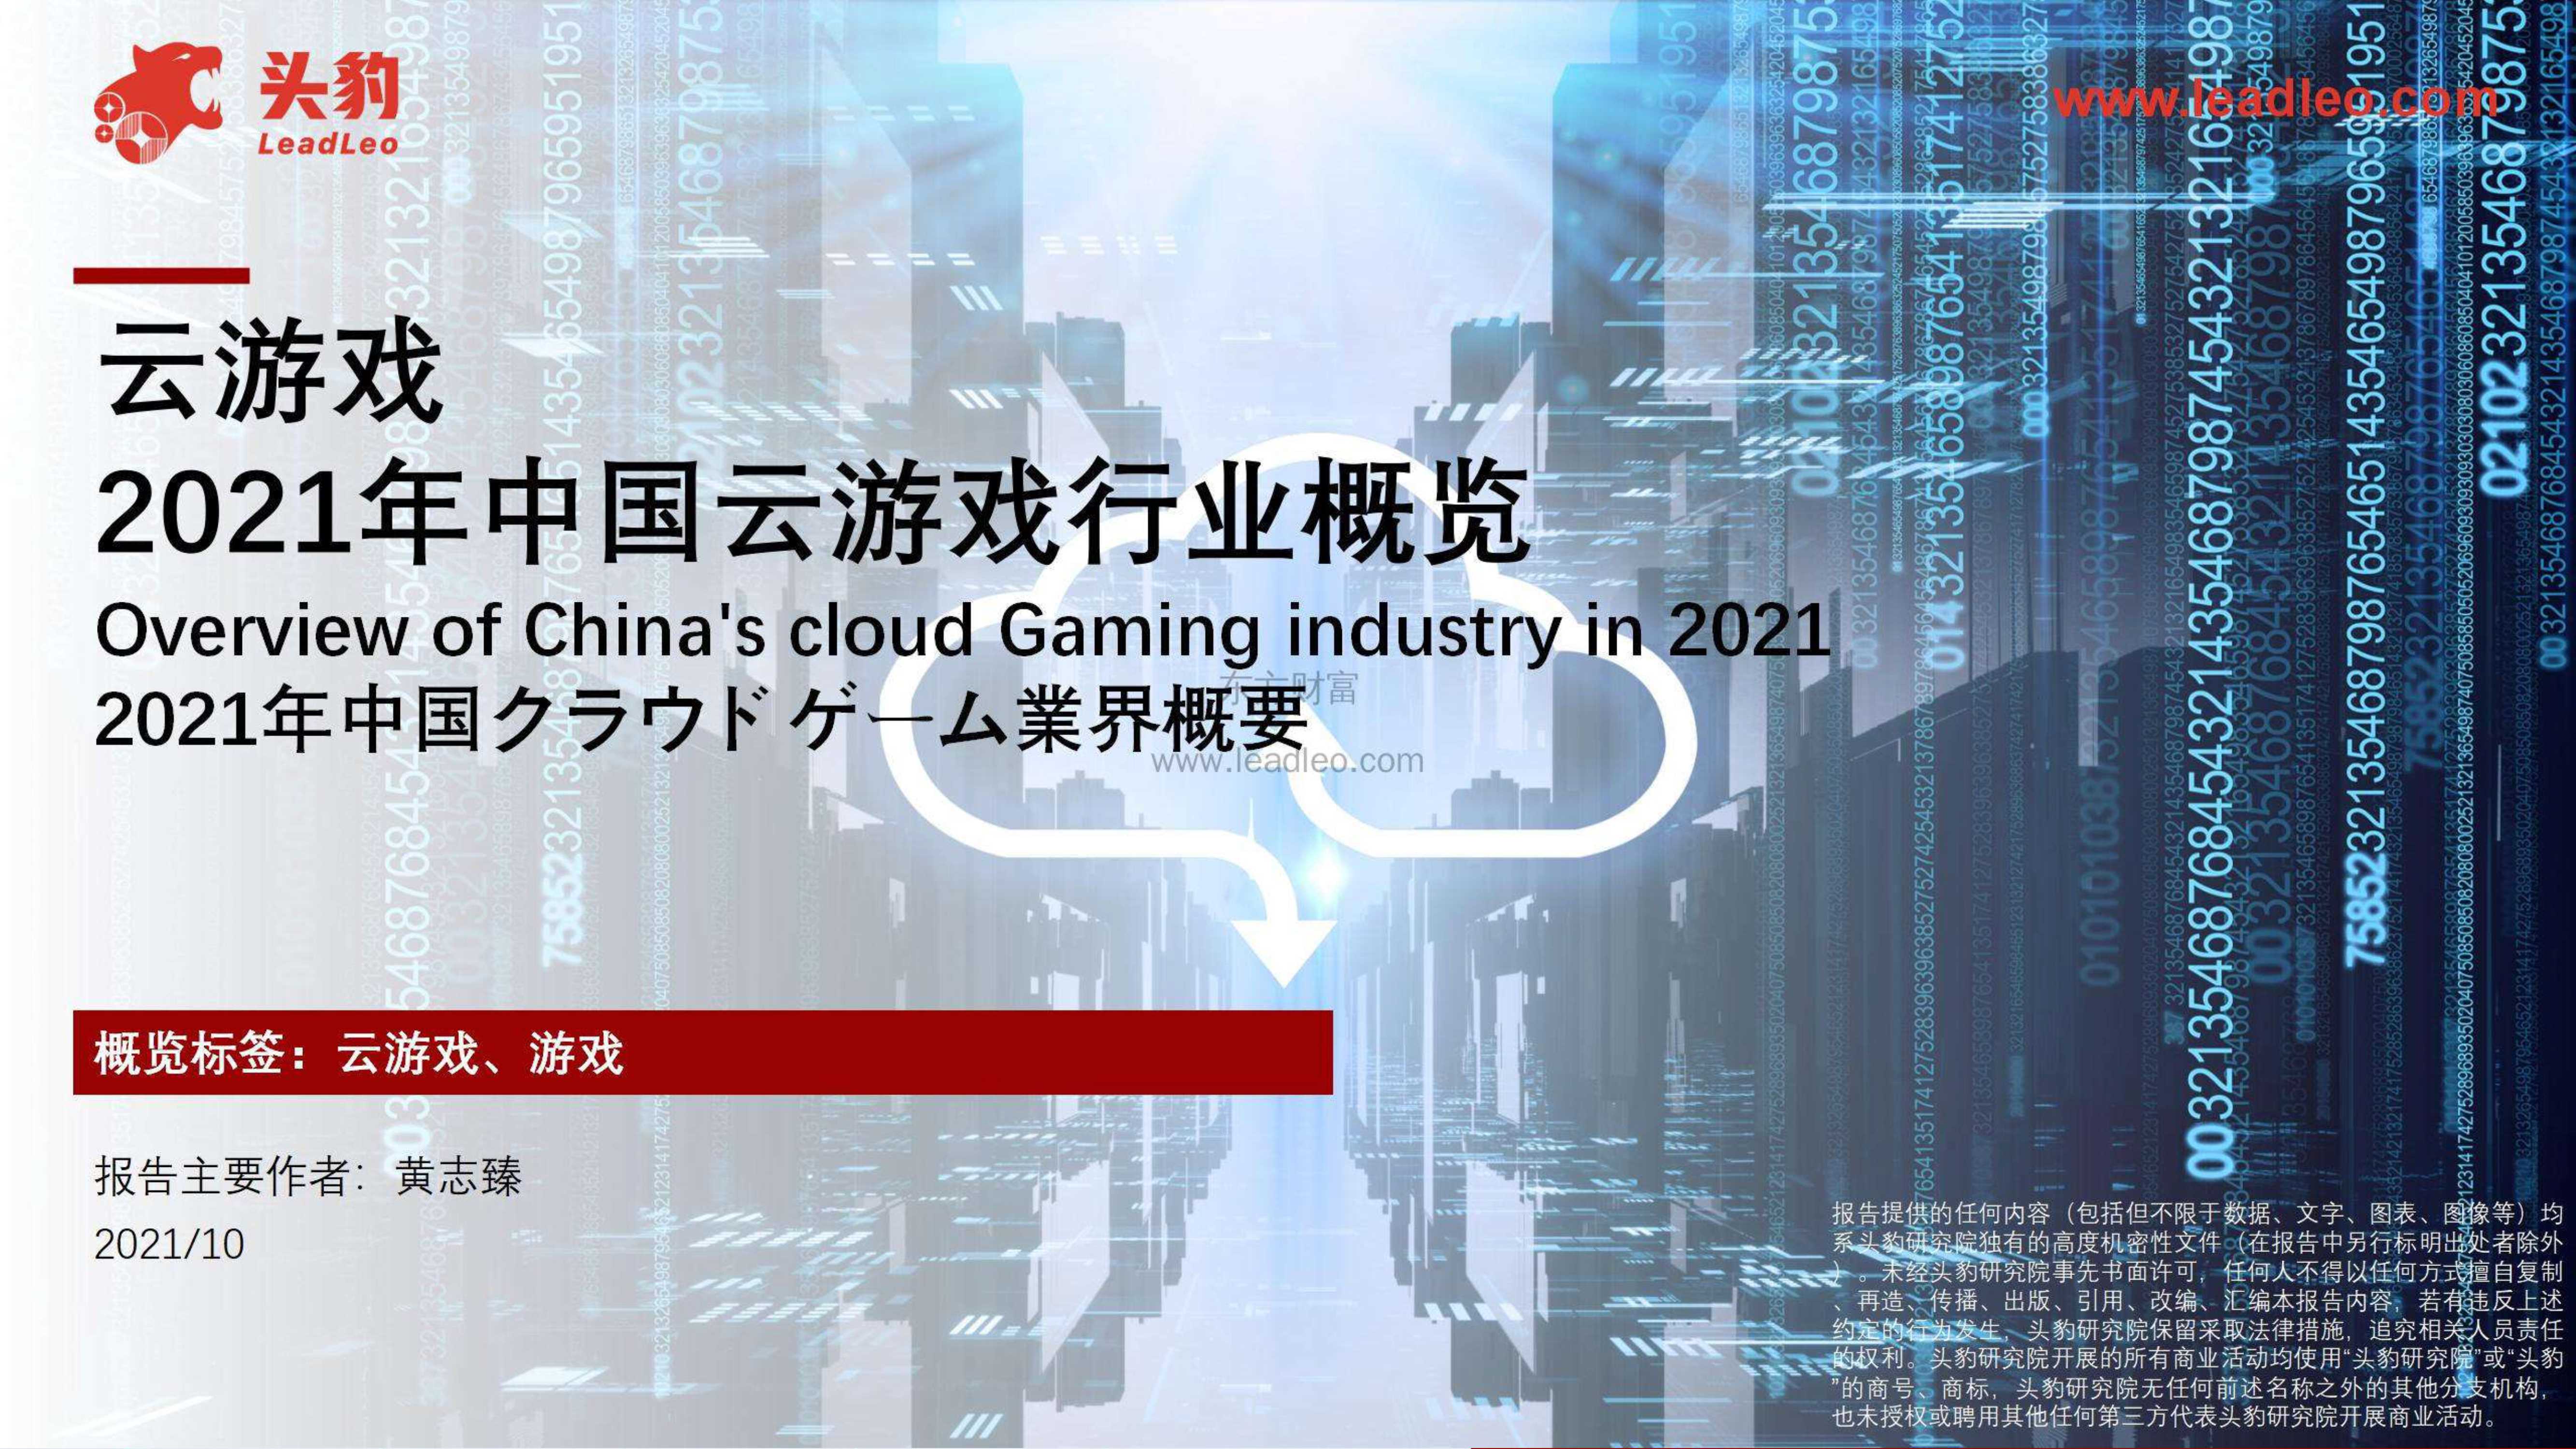 头豹研究院-2021年中国云游戏行业概览-2021.11-29页